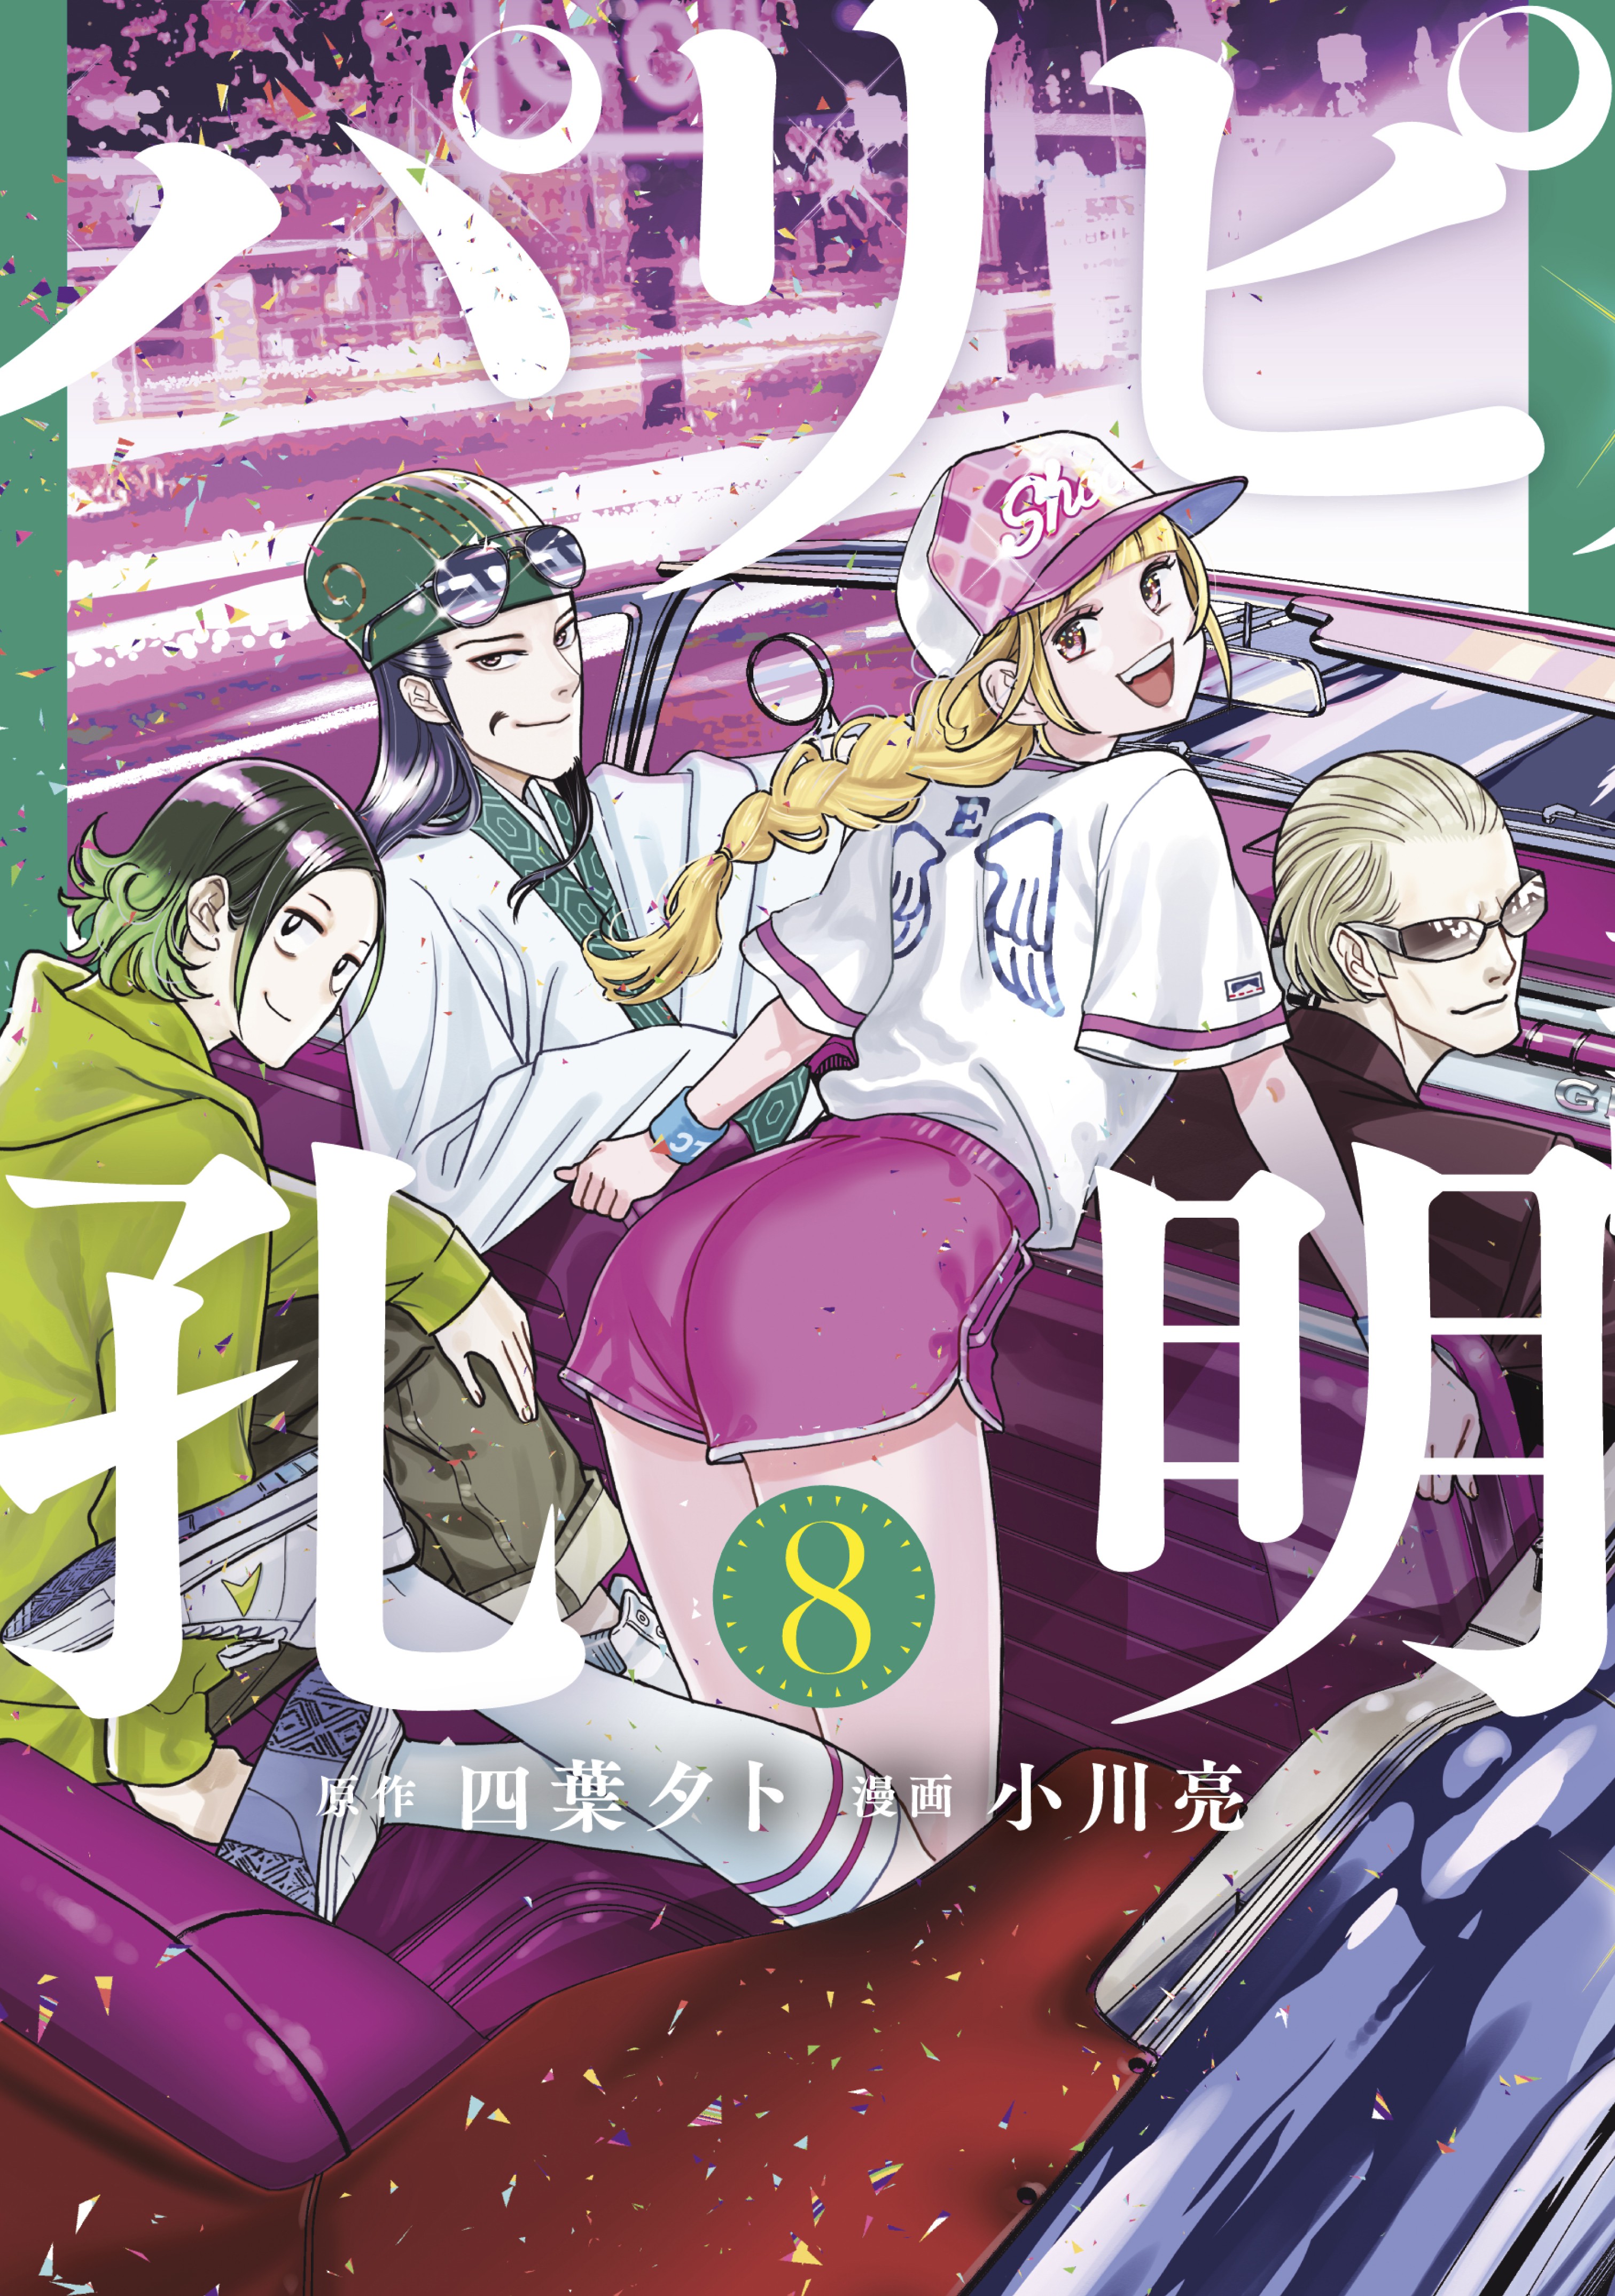 Paripi Koumei Chapter 13 - Novel Cool - Best online light novel